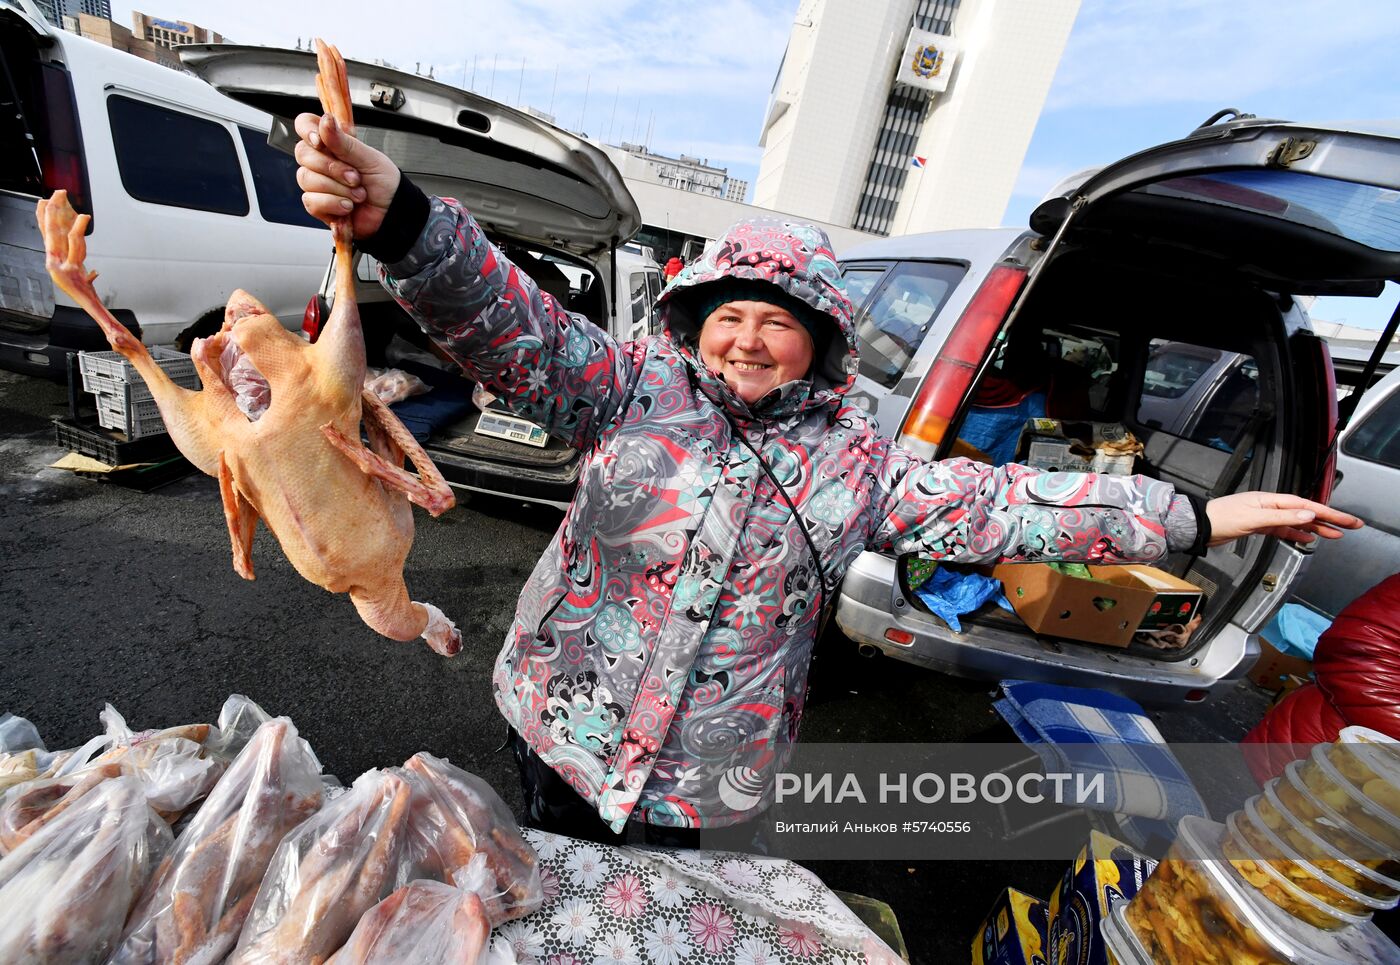 Продовольственная ярмарка во Владивостоке